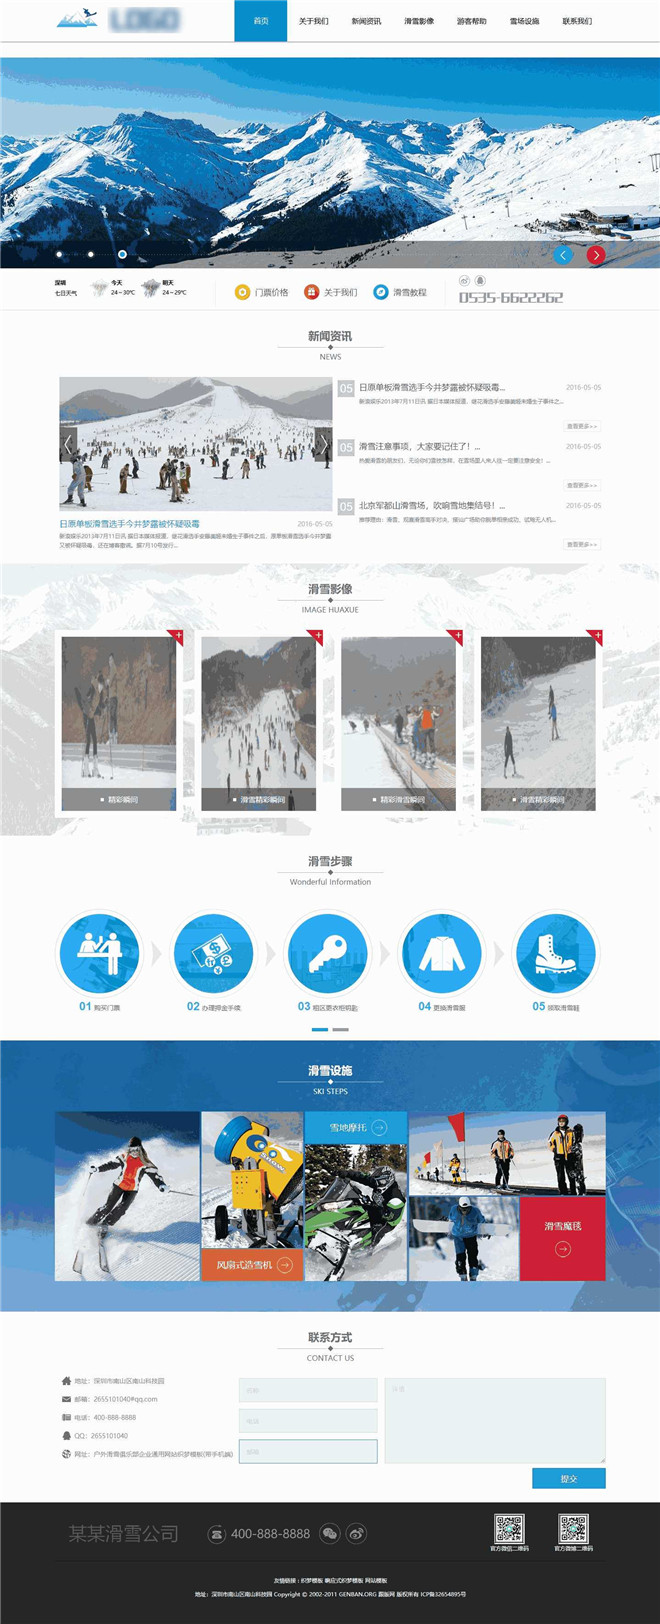 户外滑雪俱乐部企业通用网站含手机站WordPress模板下载演示图